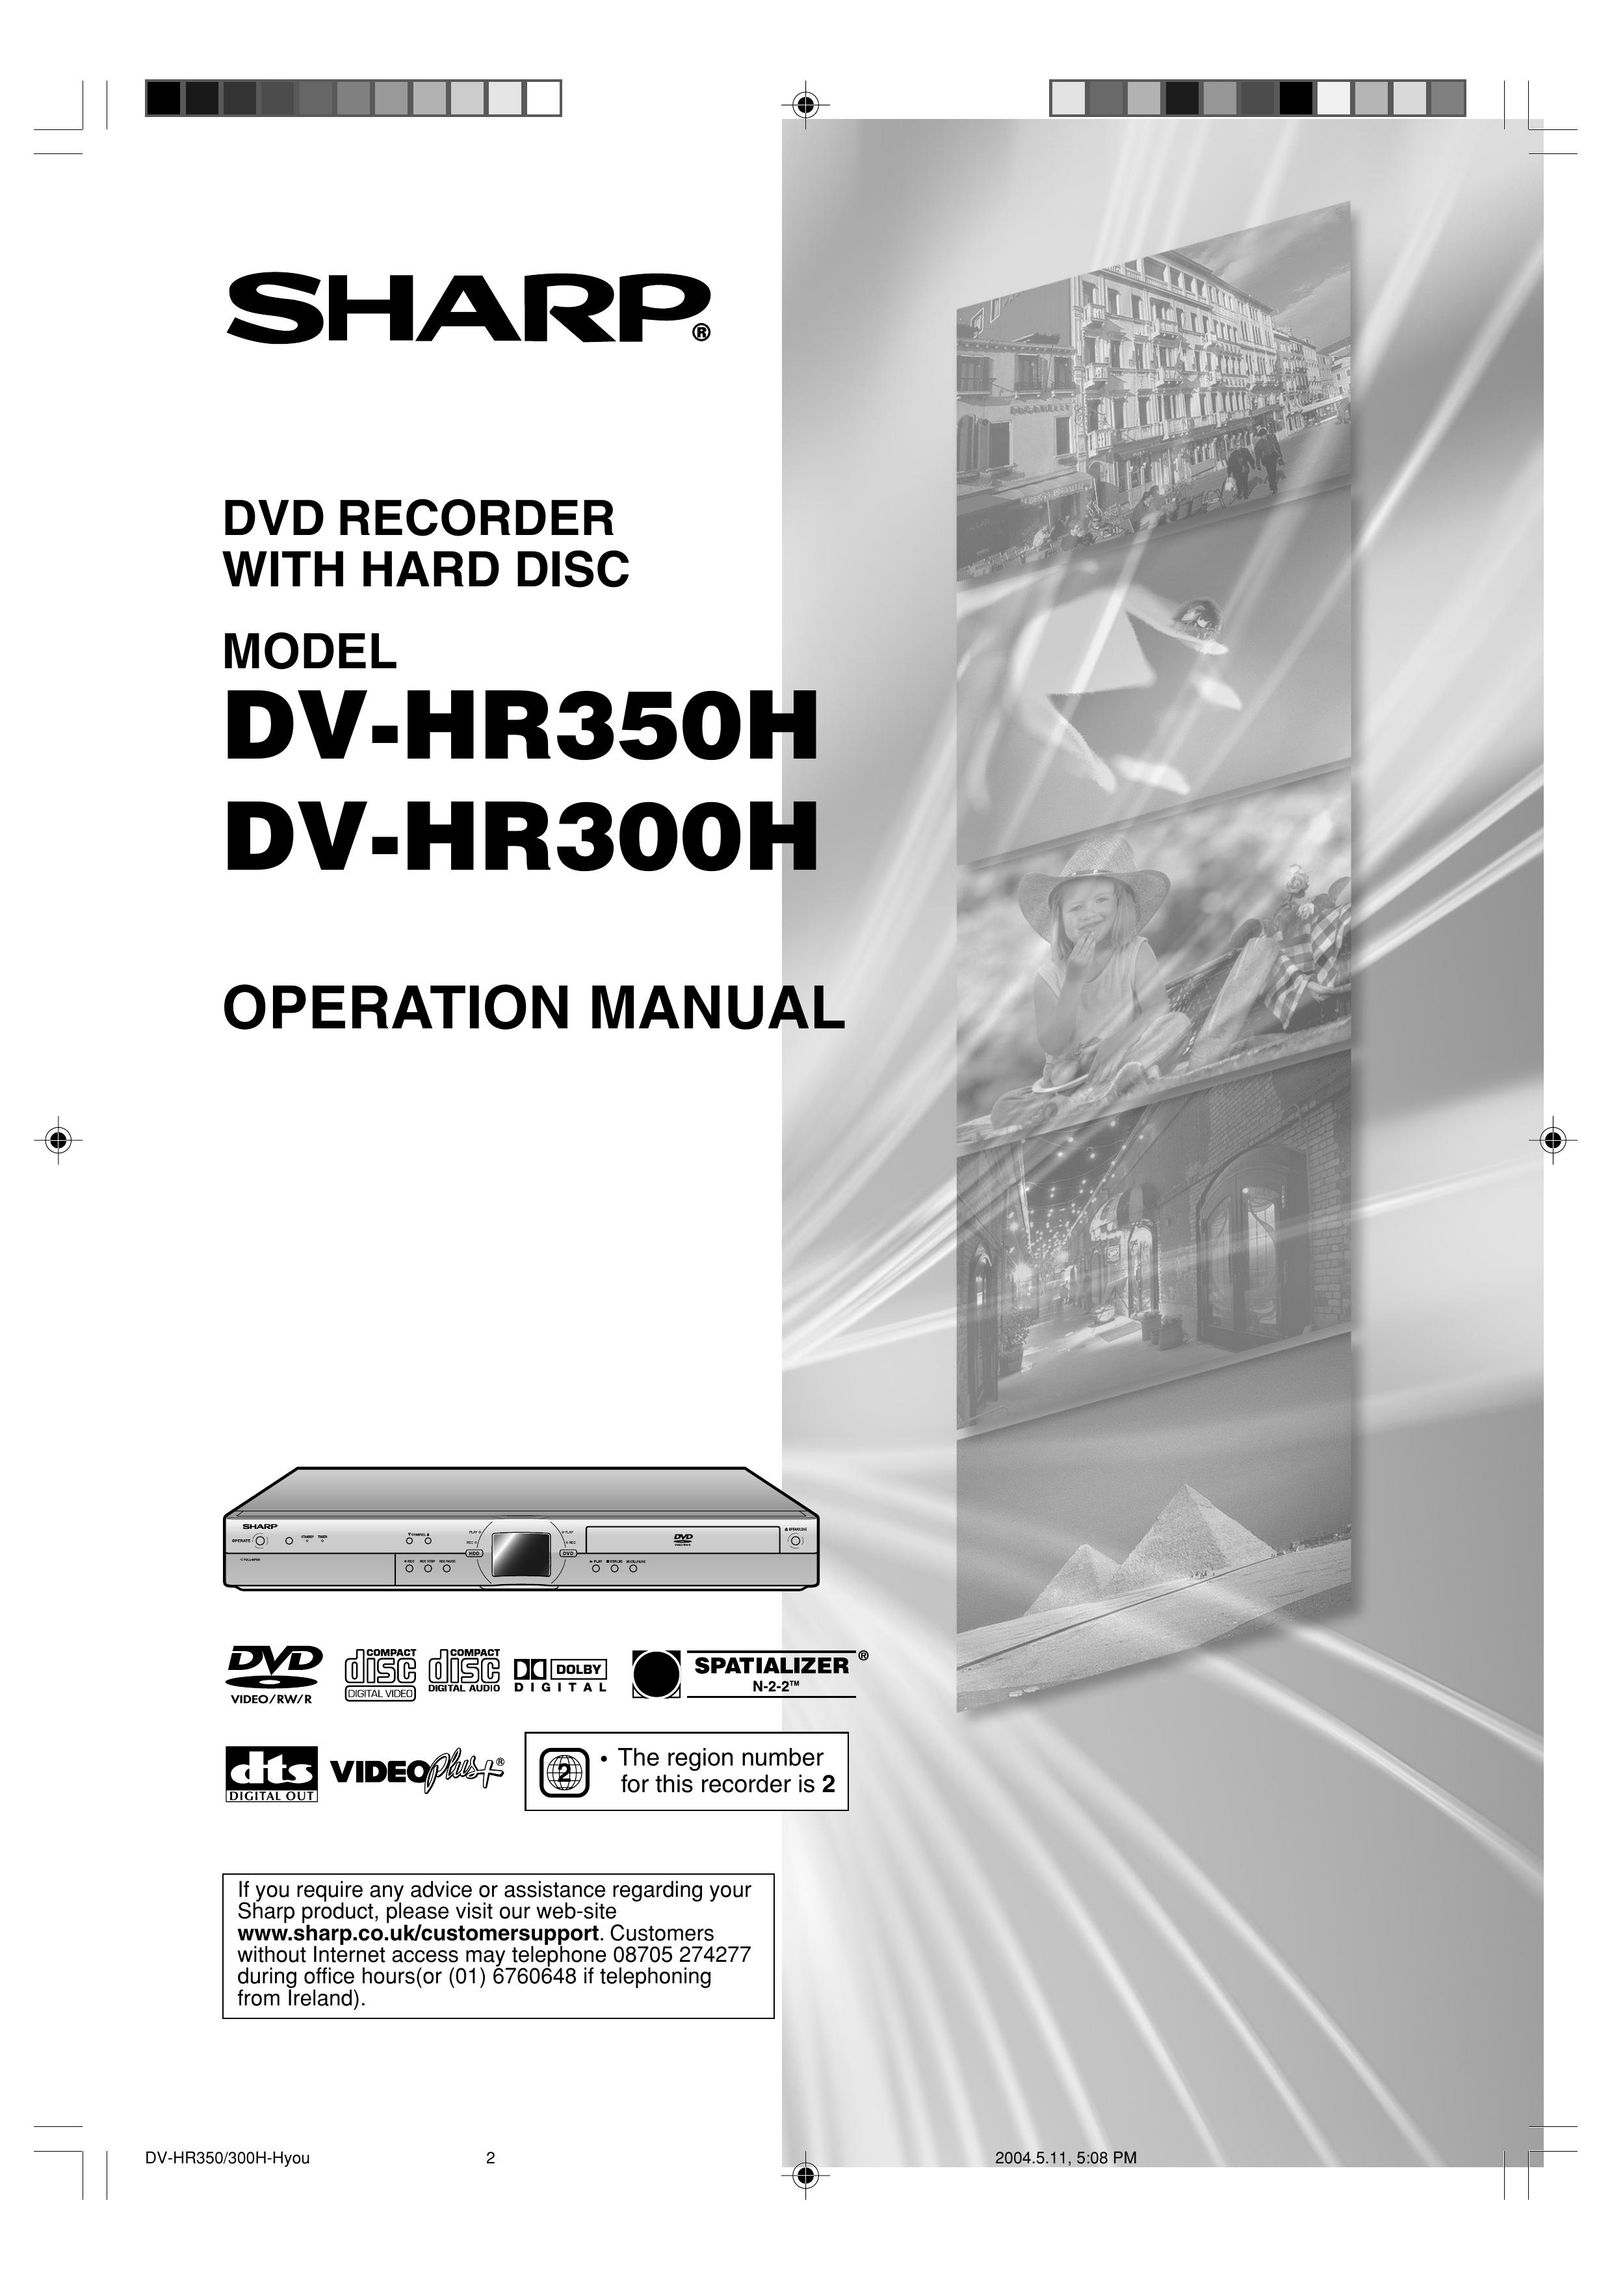 Sharp DV-HR300H DVR User Manual